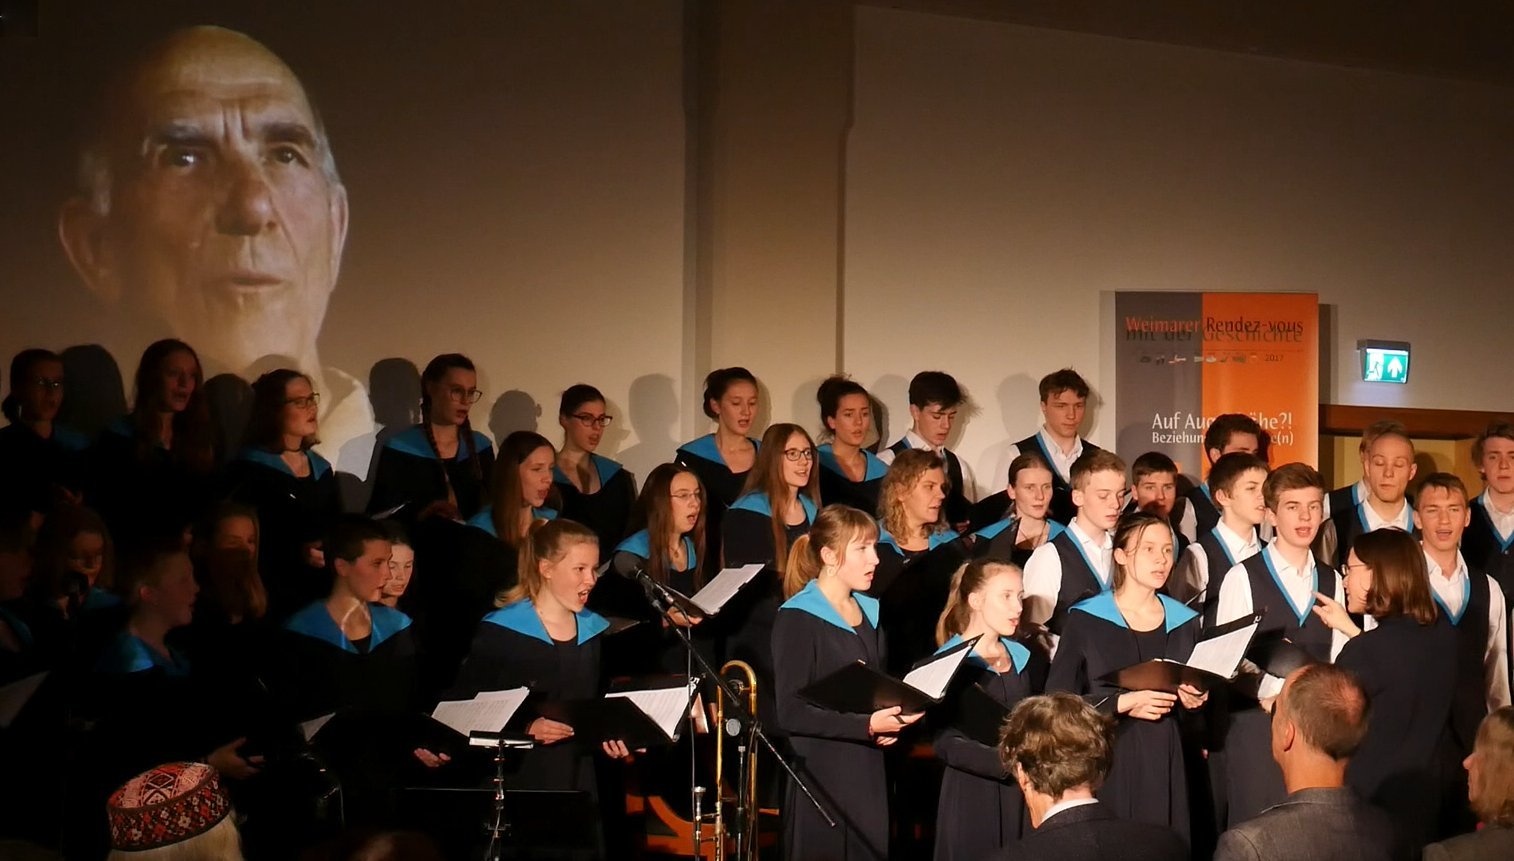 Jugendchore der schola cantorum weimar bei einer Veranstaltung des Festivals Weimaer Rendez-vous mit der Geschichte, Bild: Foto: Anselm Graubner